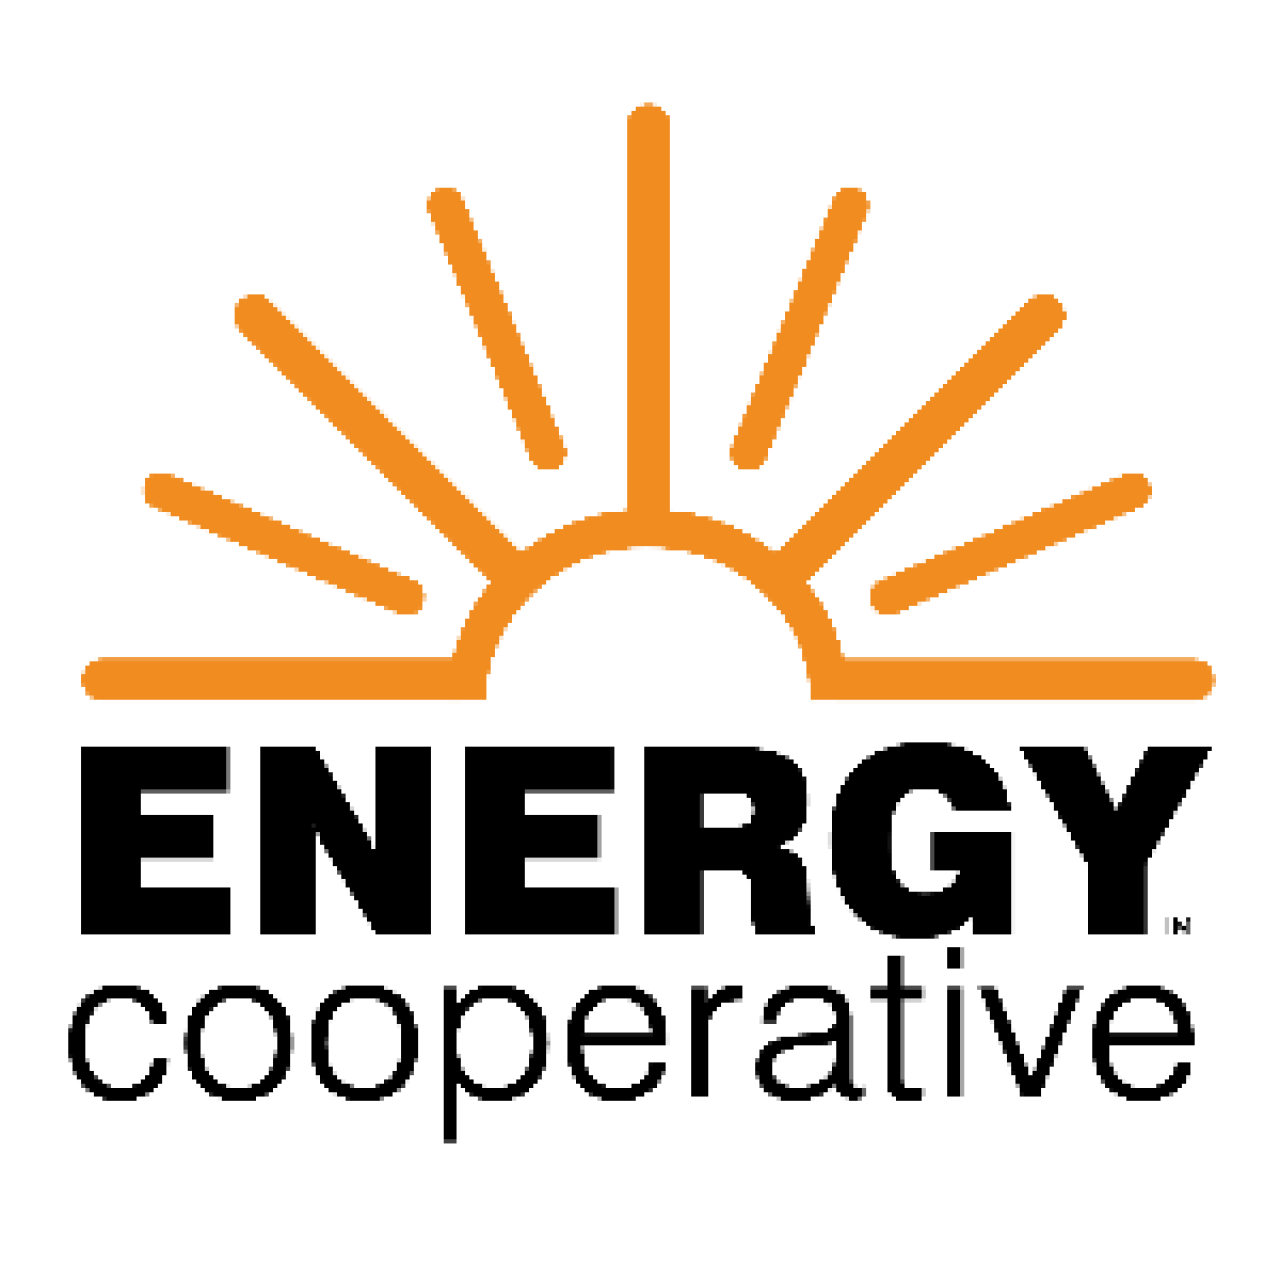 The Energy Cooperative logo.